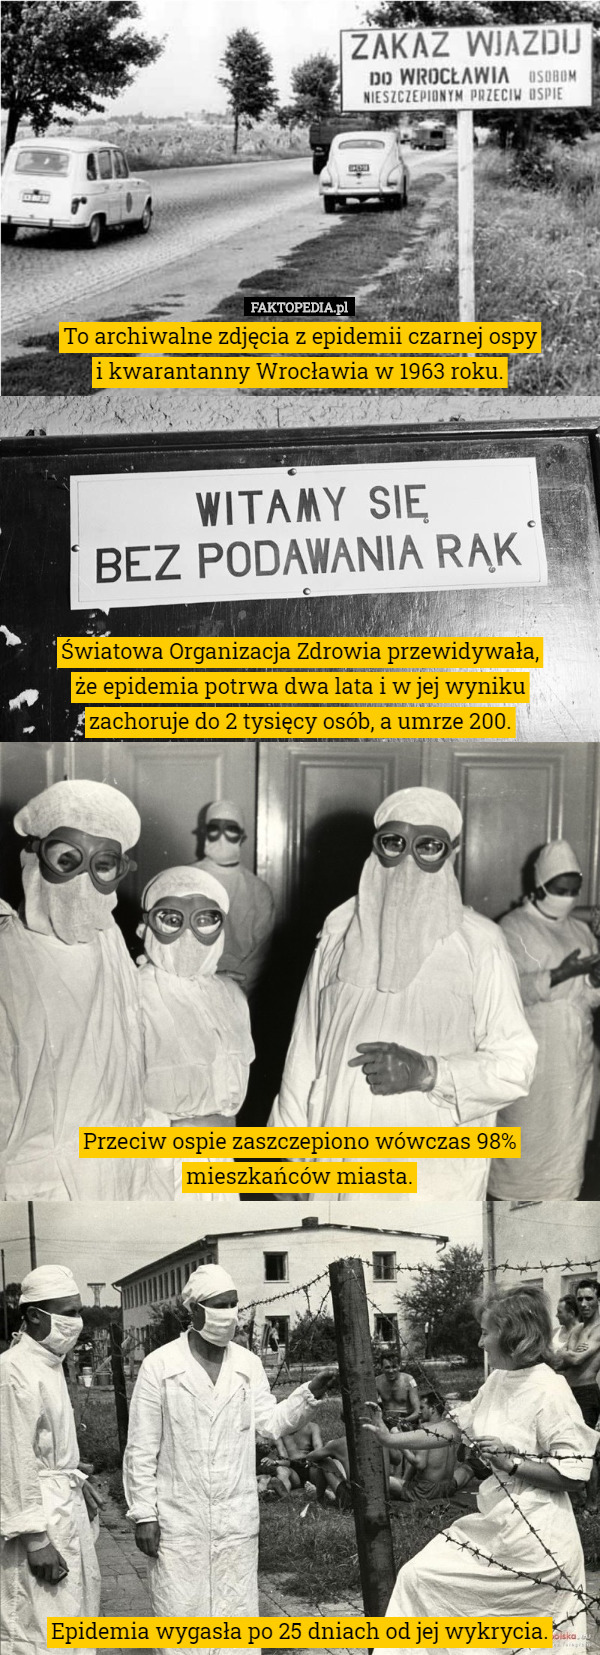 To archiwalne zdjęcia z epidemii czarnej ospy
 i kwarantanny Wrocławia w 1963 roku.







 Światowa Organizacja Zdrowia przewidywała,
 że epidemia potrwa dwa lata i w jej wyniku
 zachoruje do 2 tysięcy osób, a umrze 200.











 Przeciw ospie zaszczepiono wówczas 98% mieszkańców miasta.












 Epidemia wygasła po 25 dniach od jej wykrycia. 